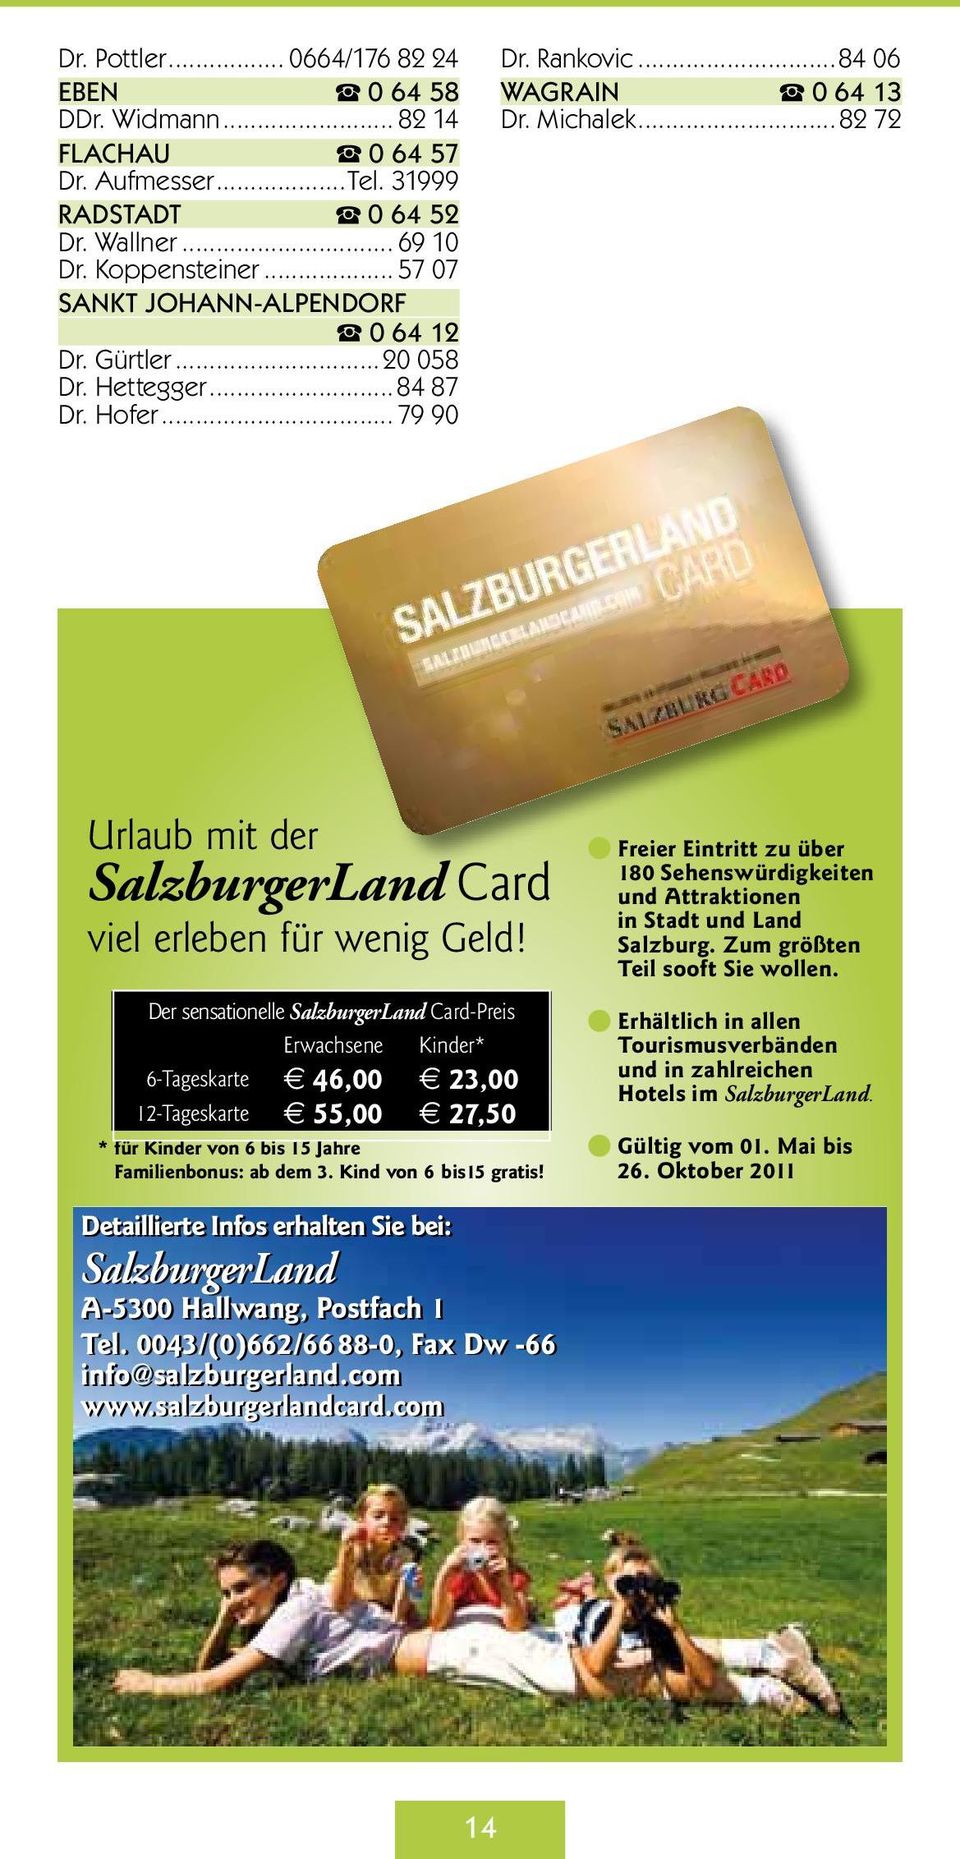 Der sensationelle SalzburgerLand Card-Preis Erwachsene Kinder* 6-Tageskarte 46,00 23,00 12-Tageskarte 55,00 27,50 * für Kinder von 6 bis 15 Jahre Familienbonus: ab dem 3. Kind von 6 bis15 gratis!